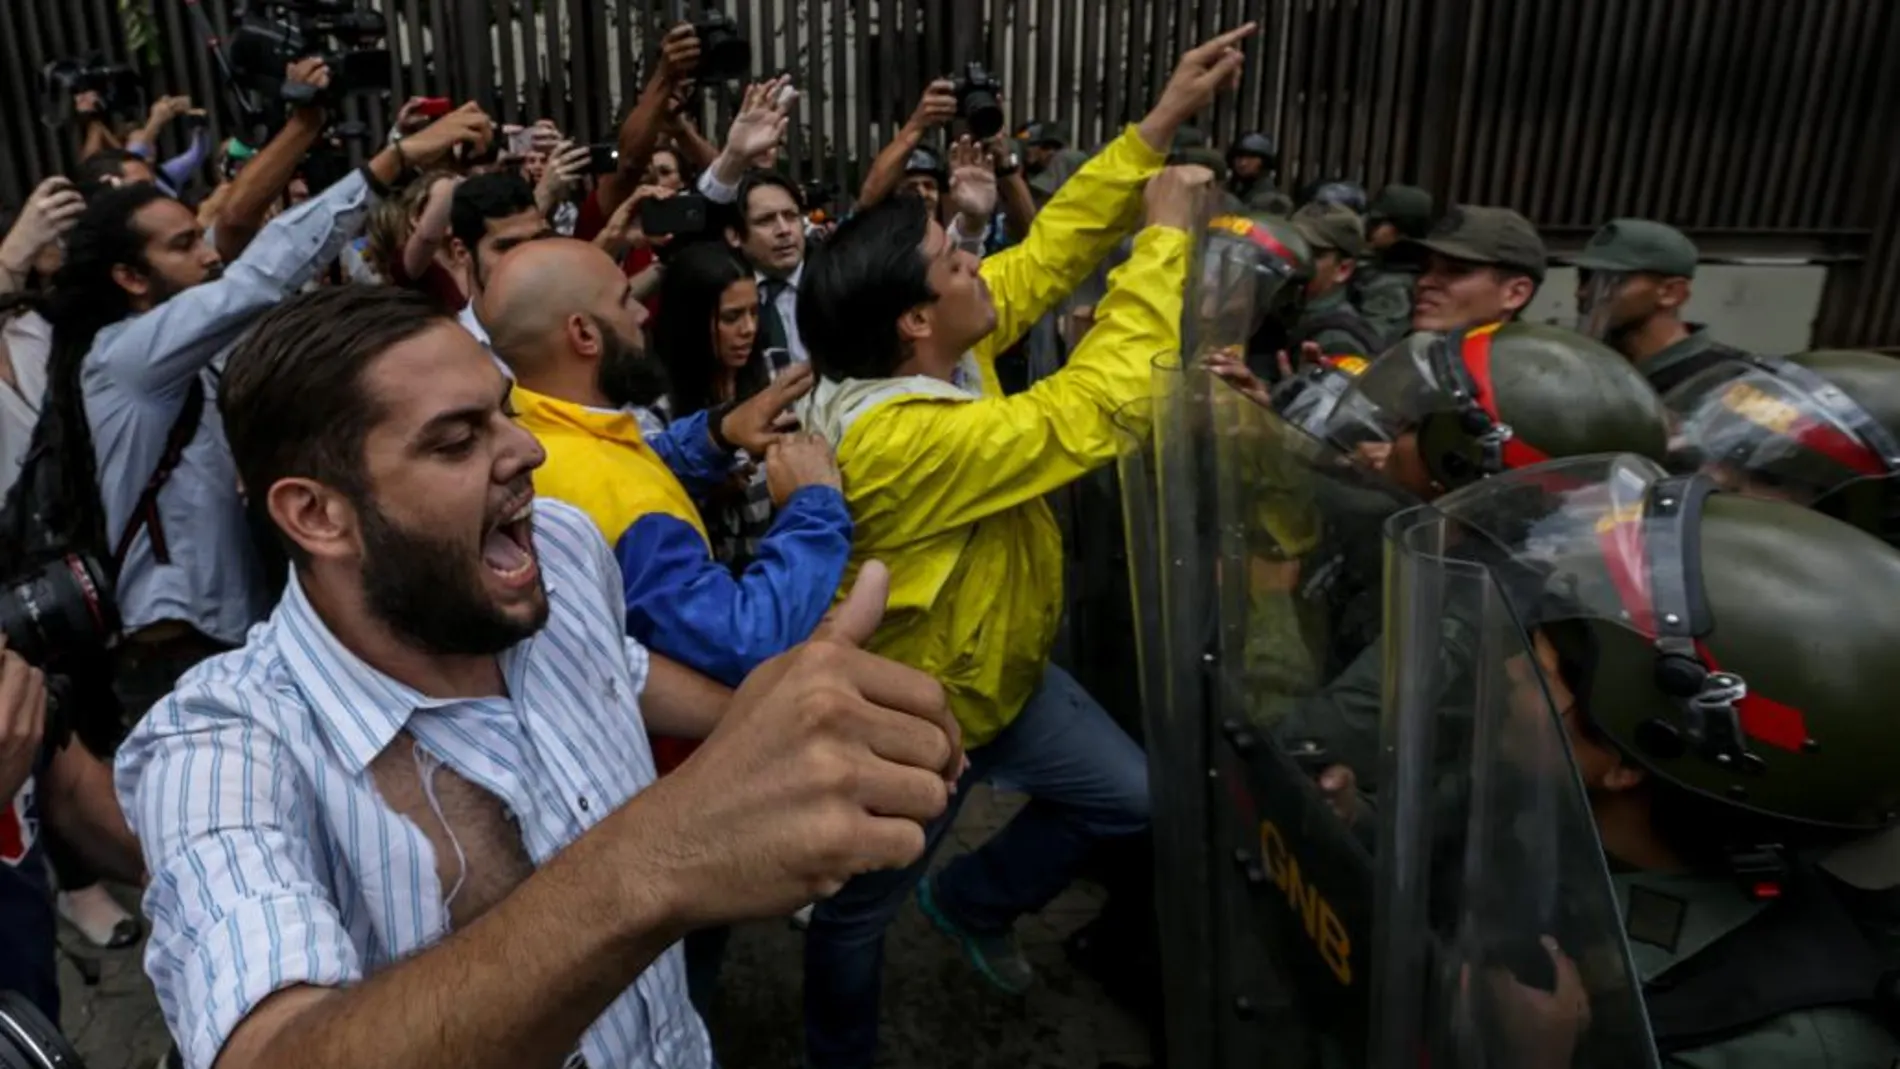 El opositor Juan Requesens, en la imagen en una protesta contra el Tribunal Supremo, es el diputado que lleva más tiempo entre rejas en Venezuela